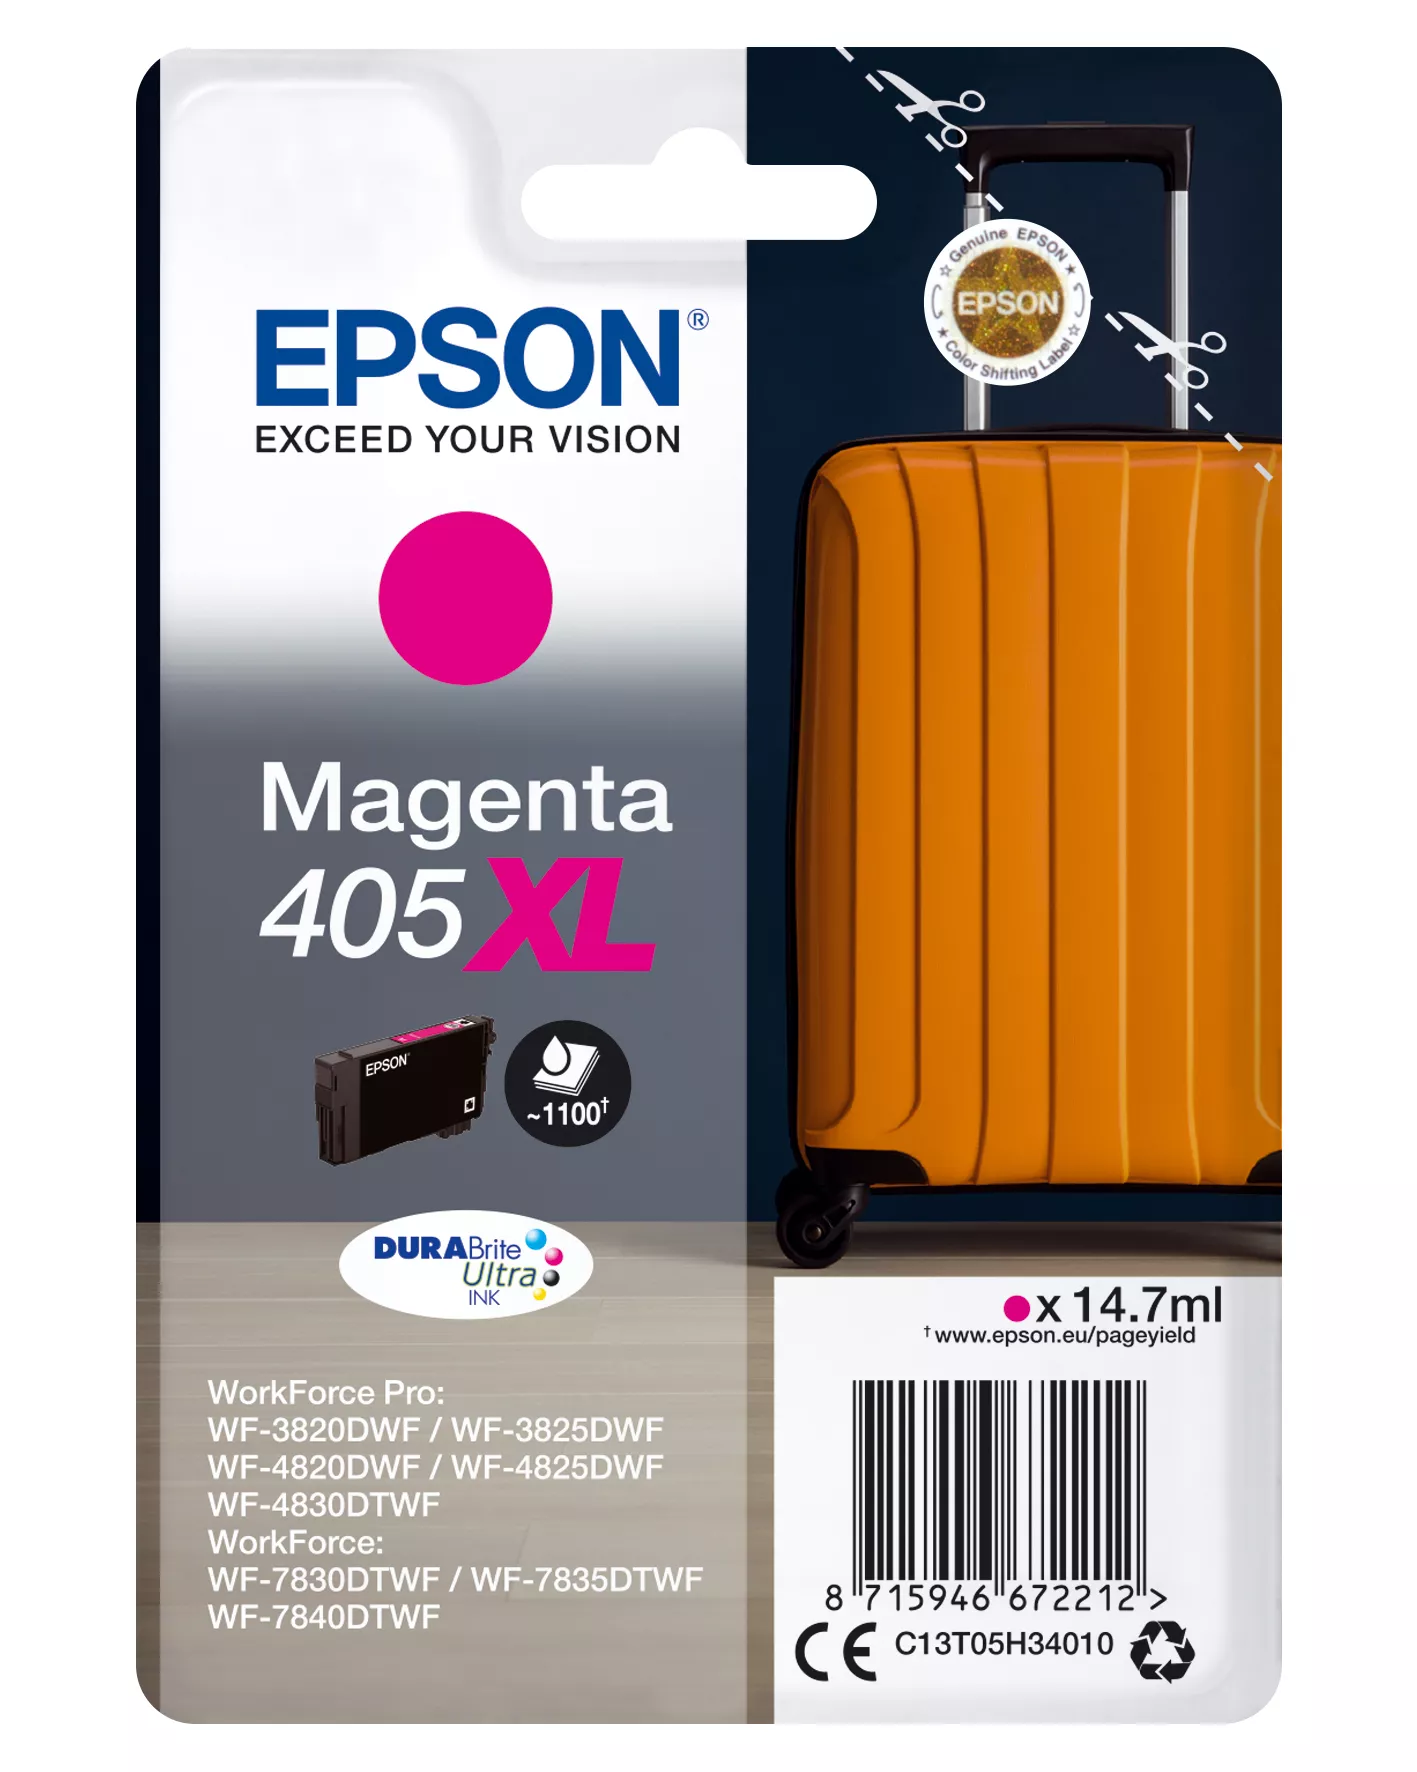 Achat EPSON Singlepack Magenta 405XL DURABrite Ultra Ink - 8715946672458